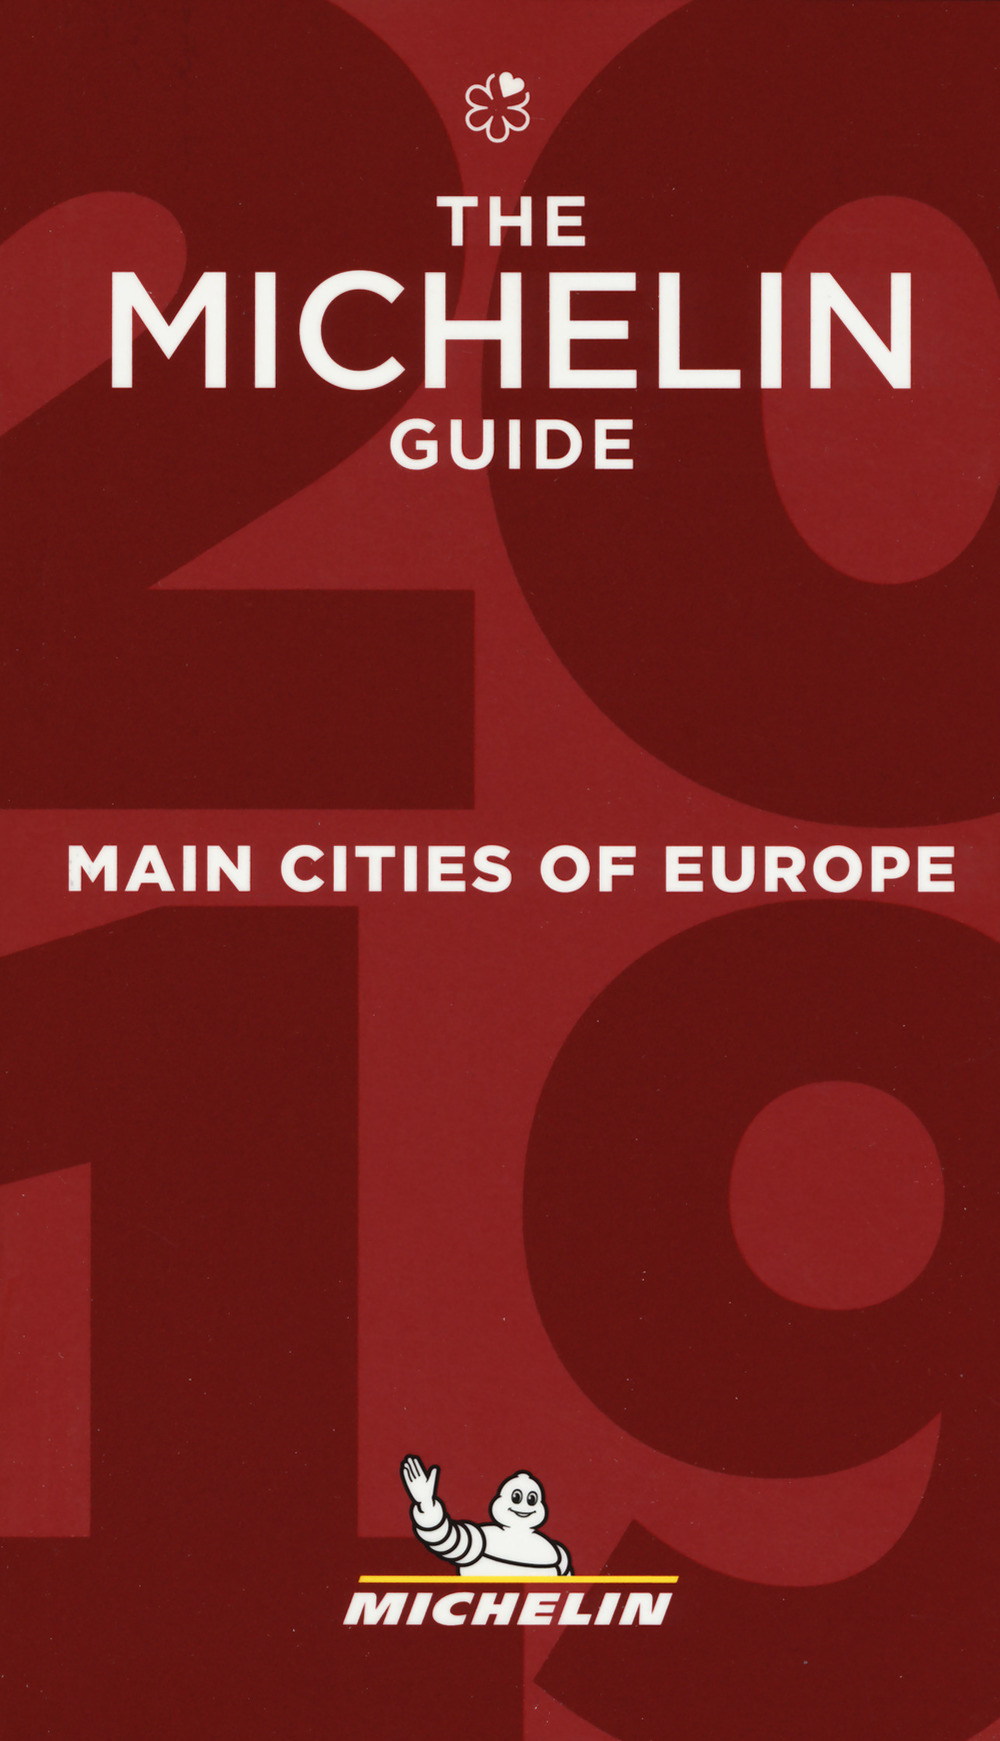 Main cities of Europe 2019